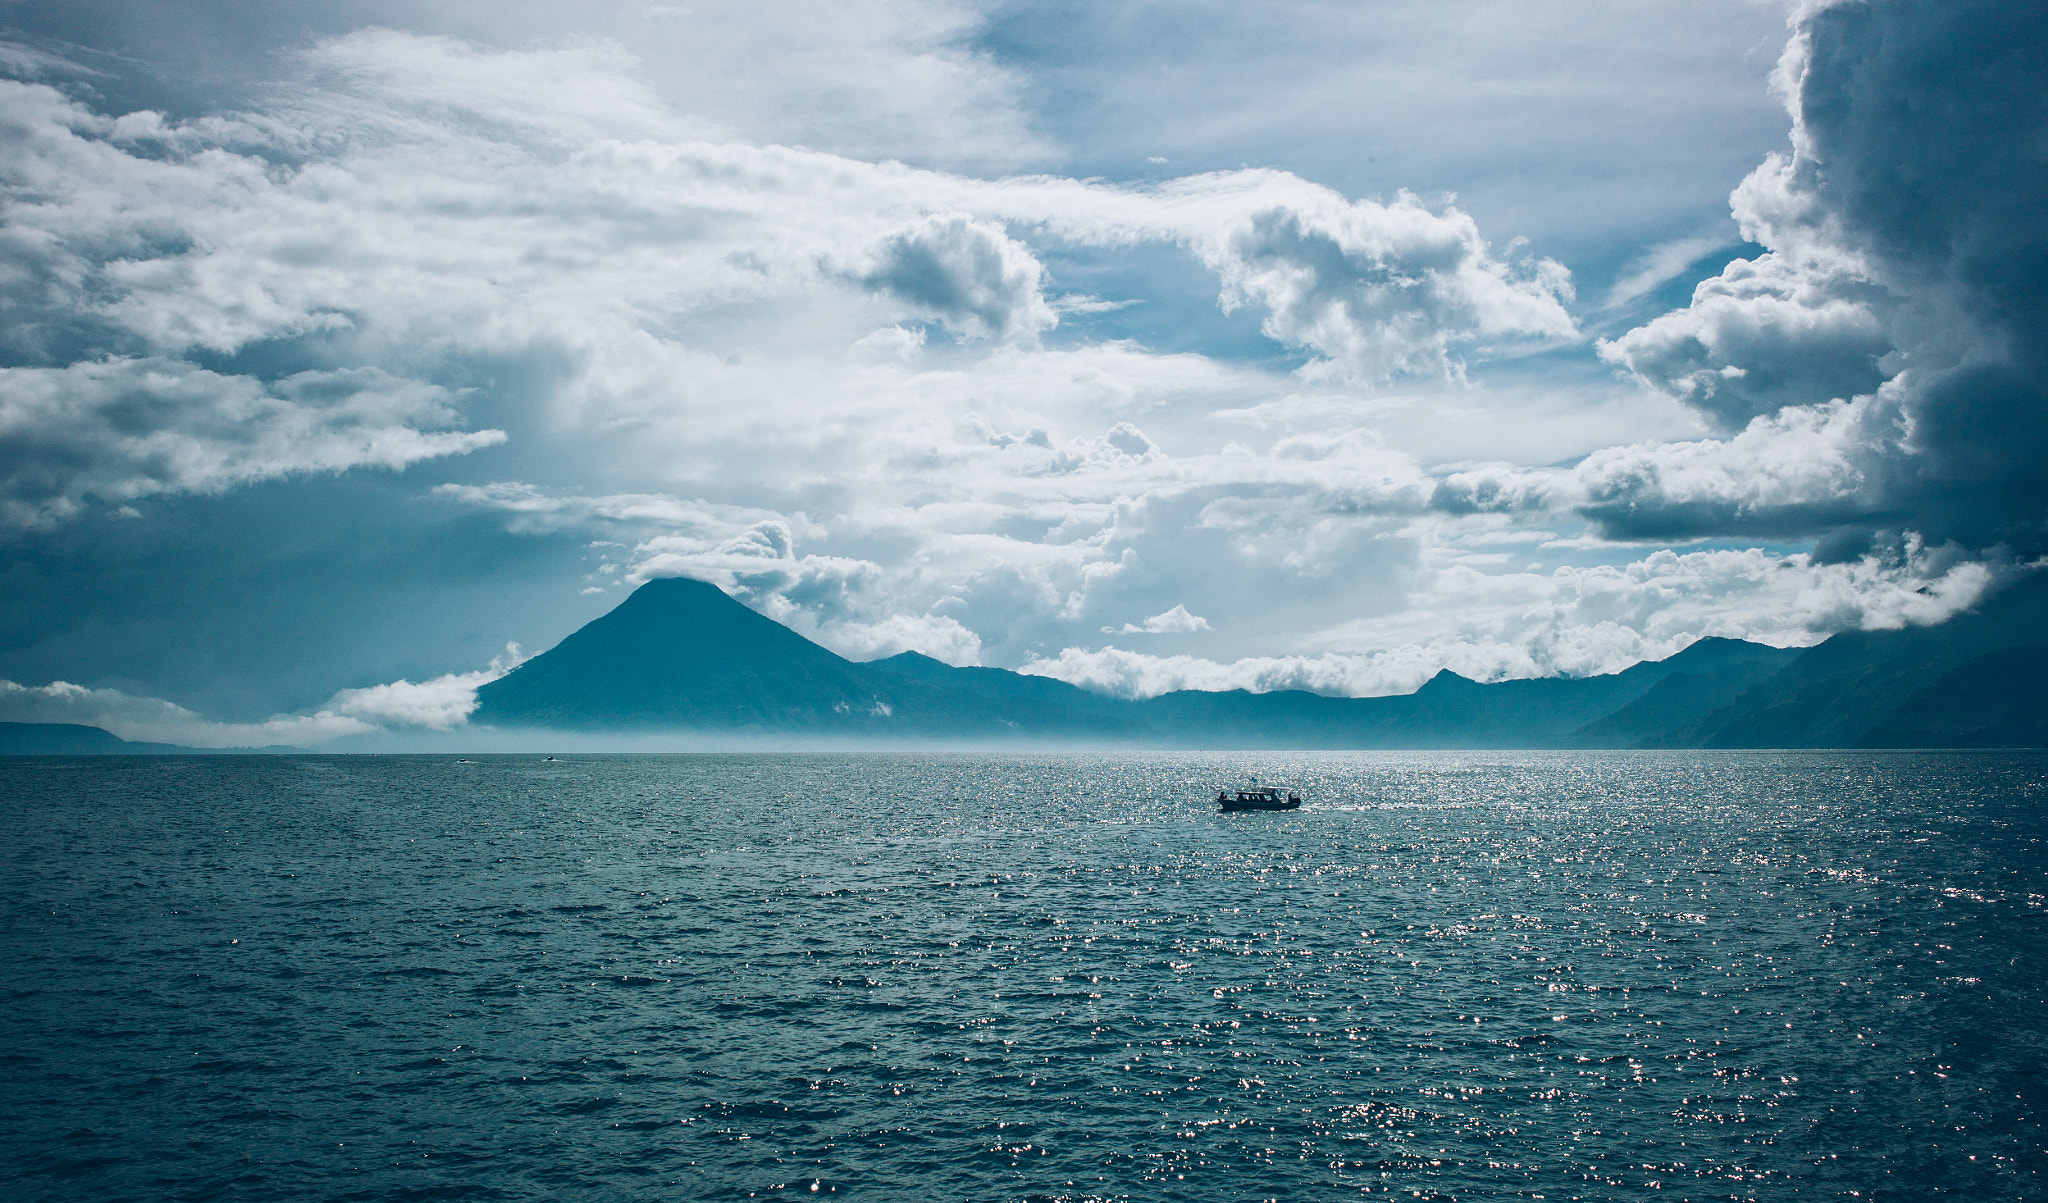 Lake of Atitlan